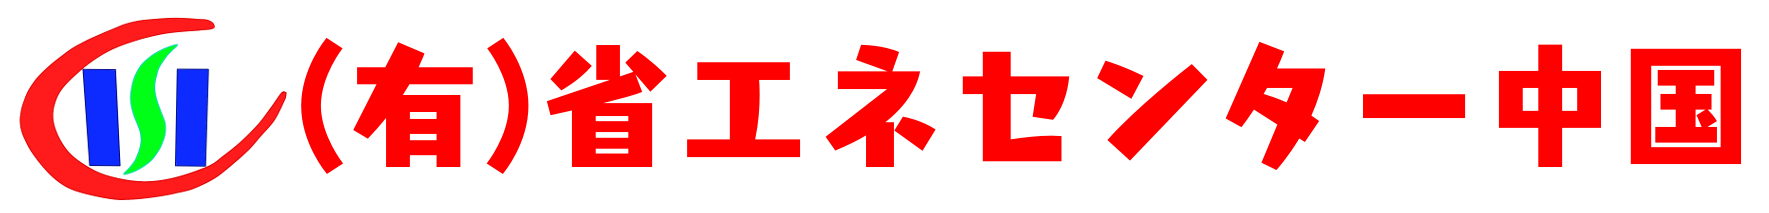 省エネセンター中国のロゴ